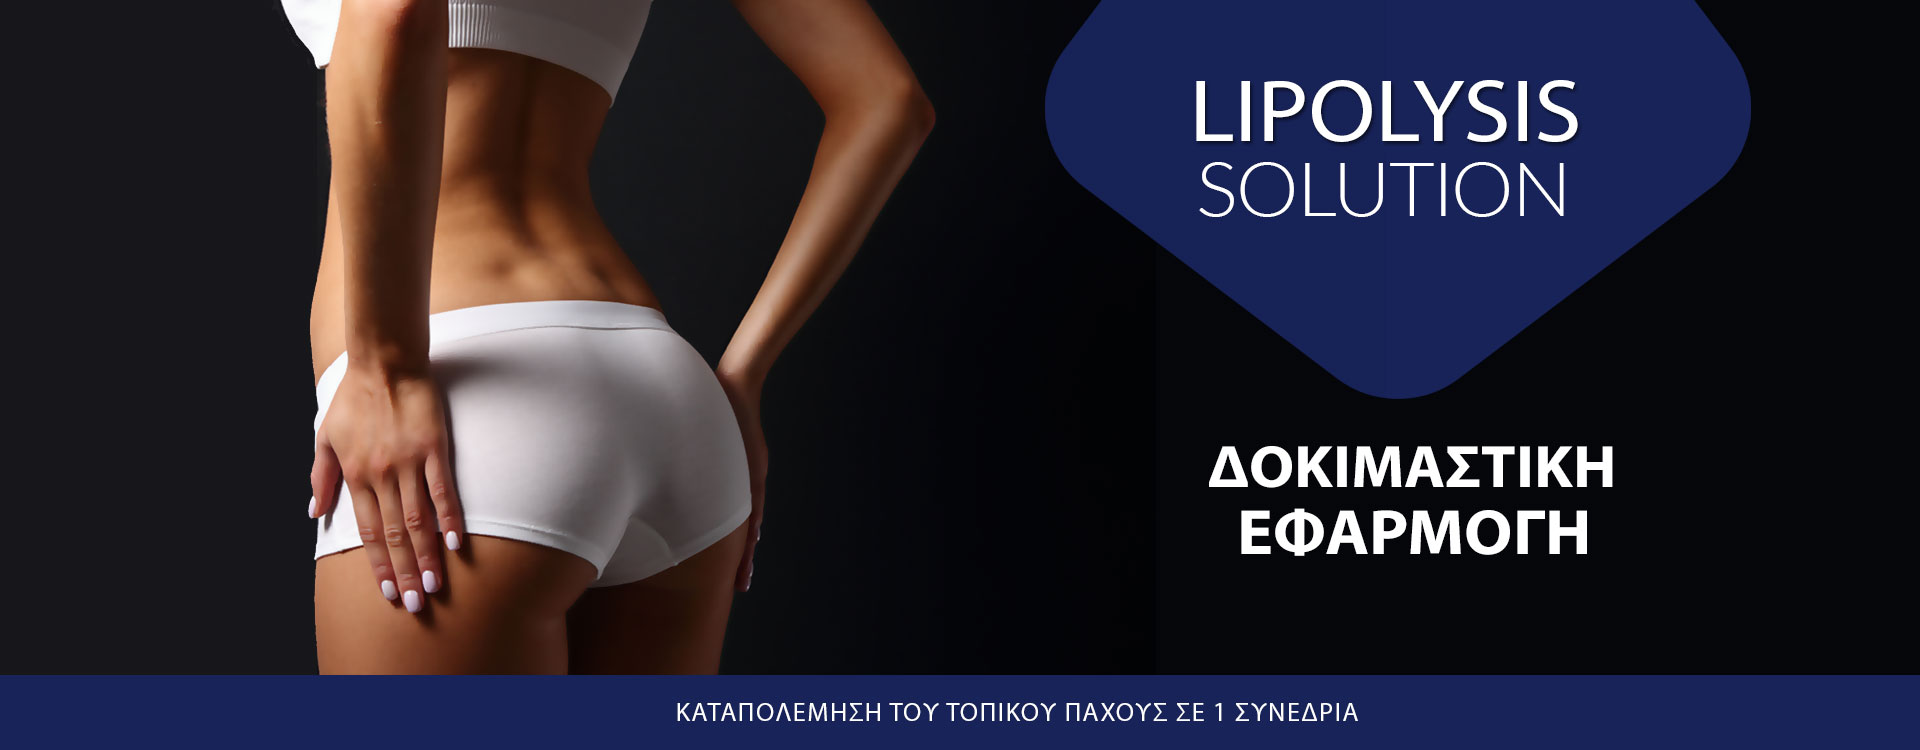 lipolysis-solution-2